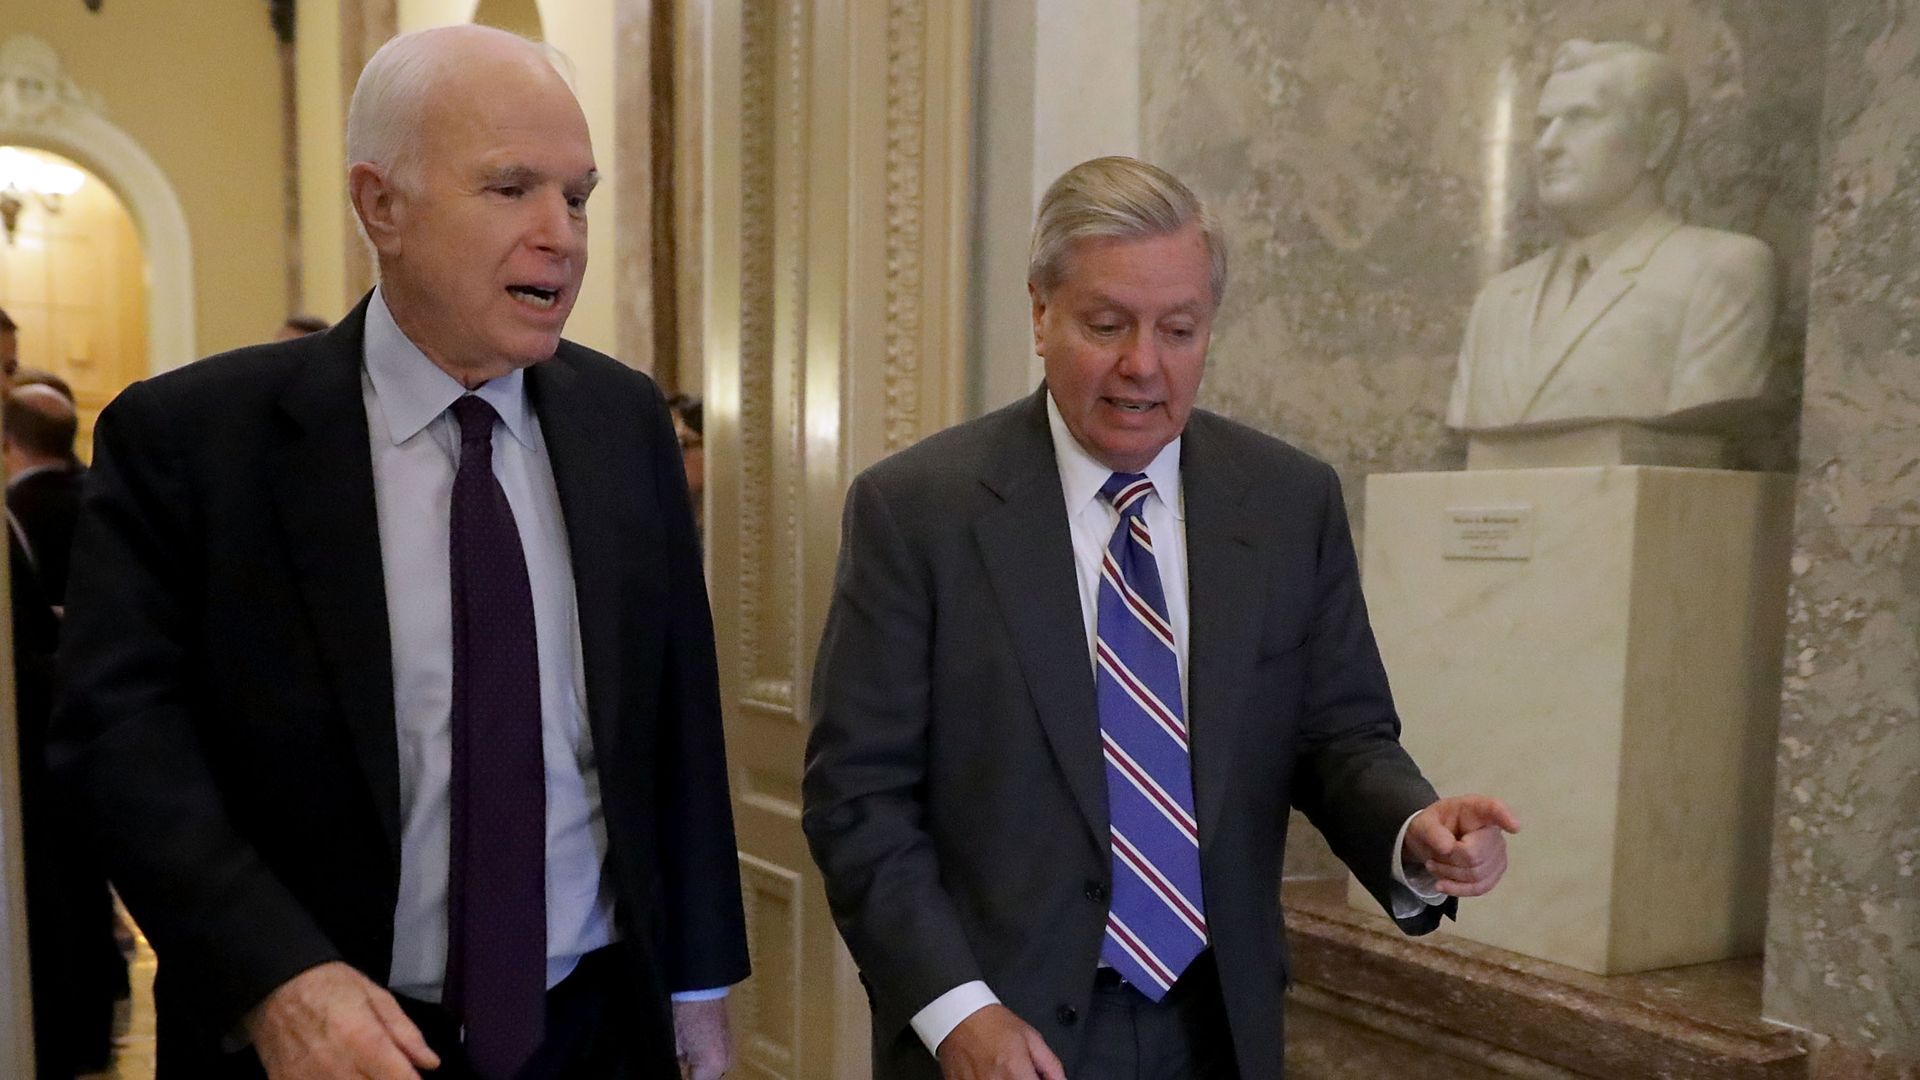 McCain and Graham walk and talk.